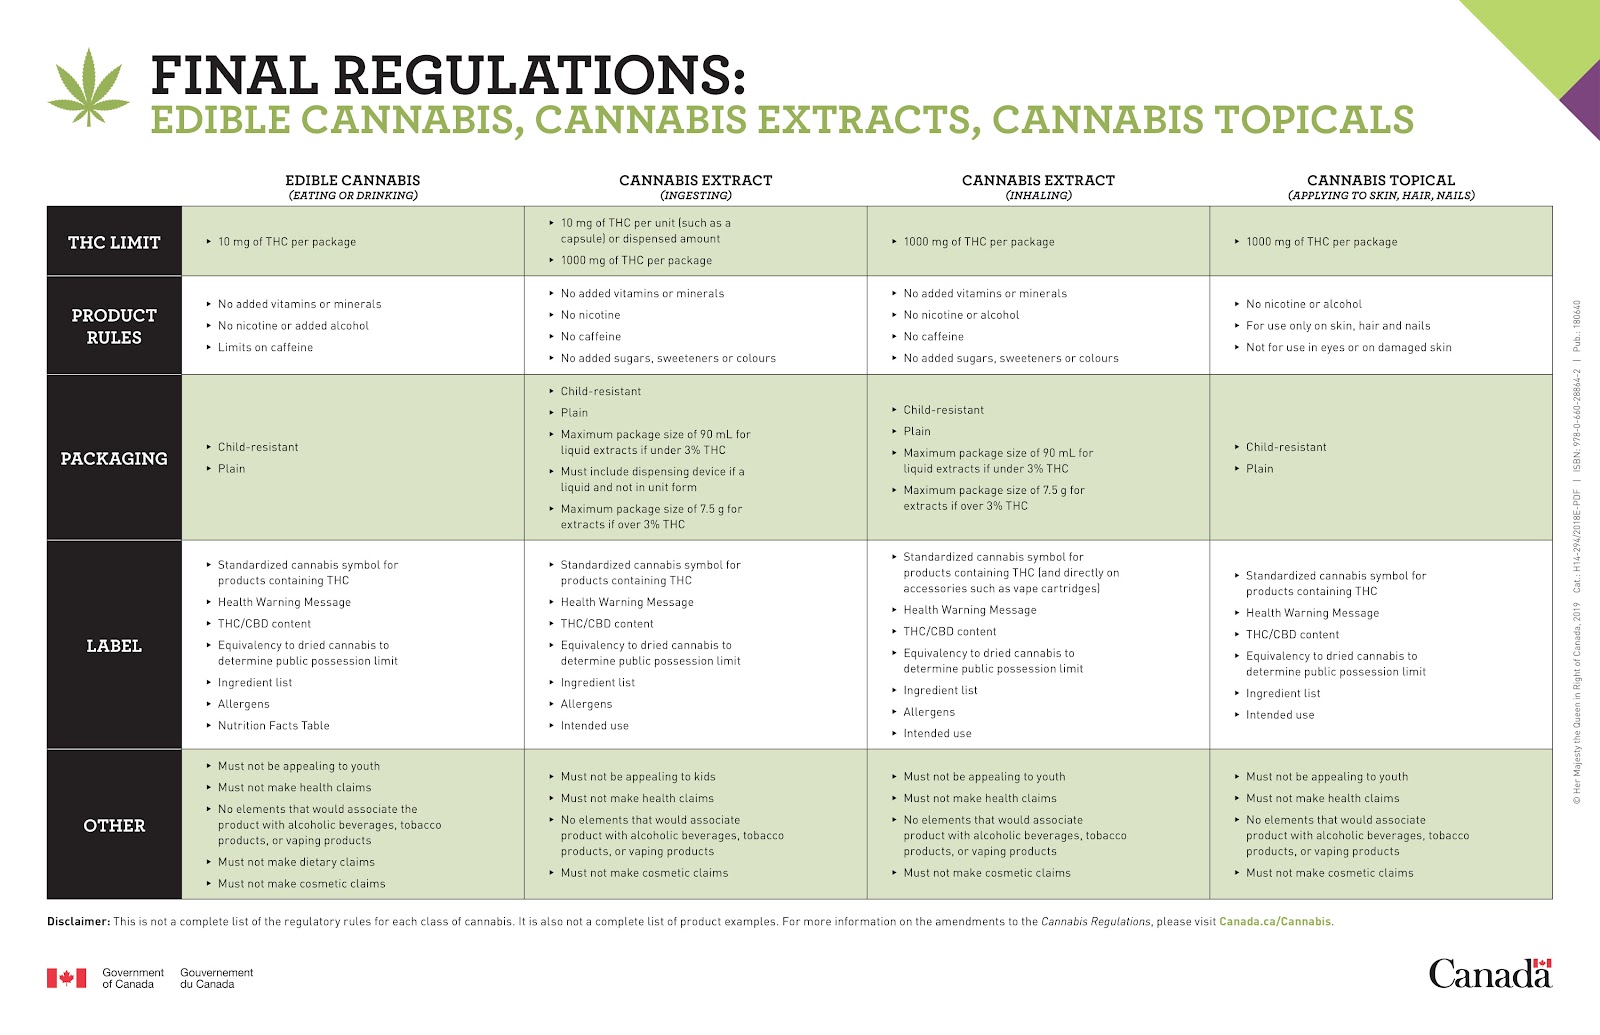 Cannabis rules